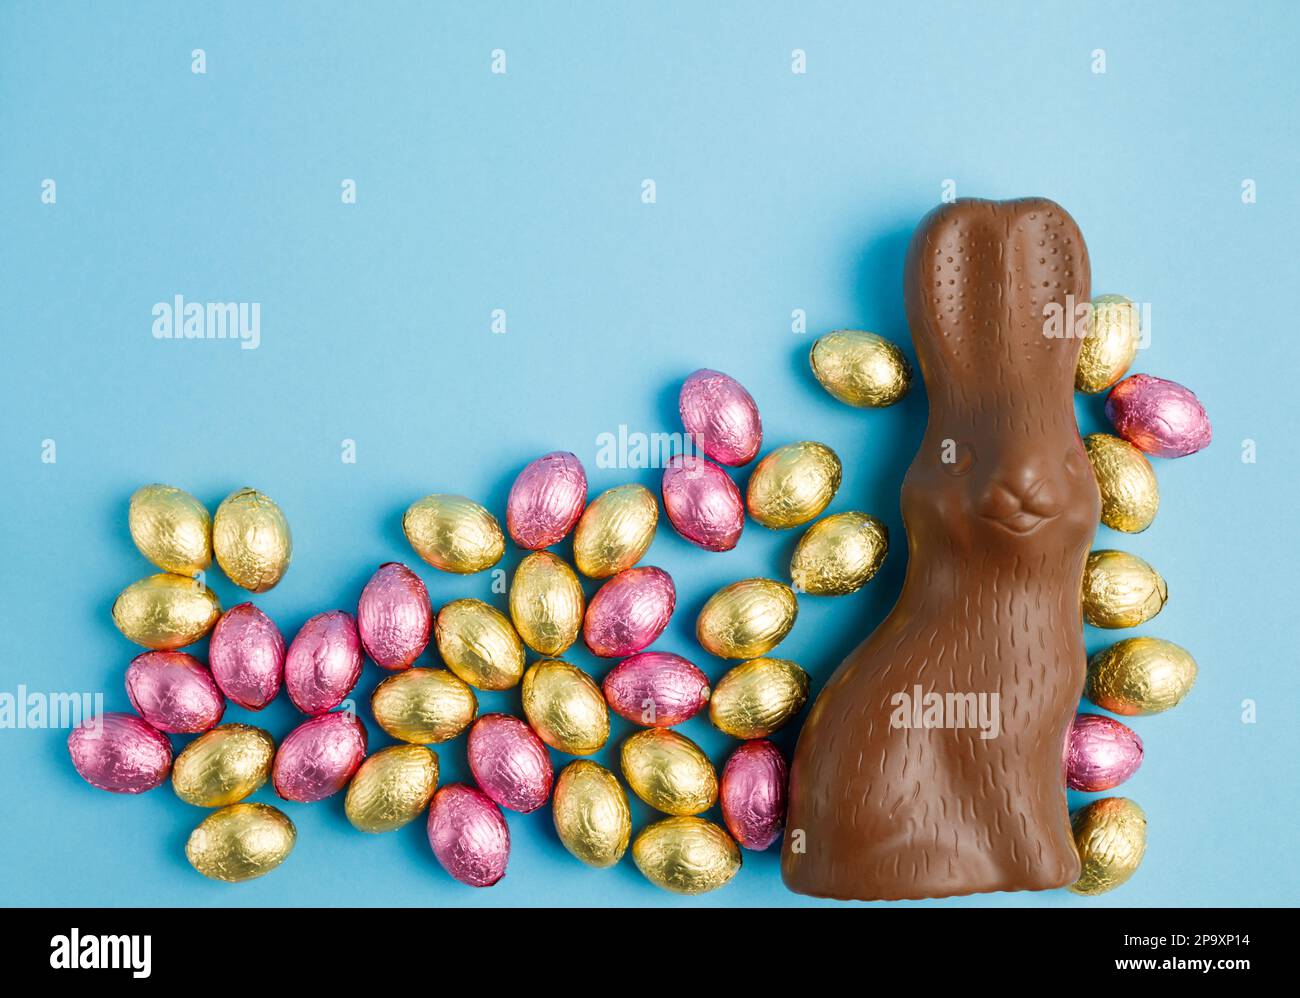 Grand lapin au chocolat au lait et pile d'œufs de Noël en papier aluminium enveloppé de rose et d'or sur fond bleu. Concept joyeuses Pâques. Préparation de l'hologramme Banque D'Images